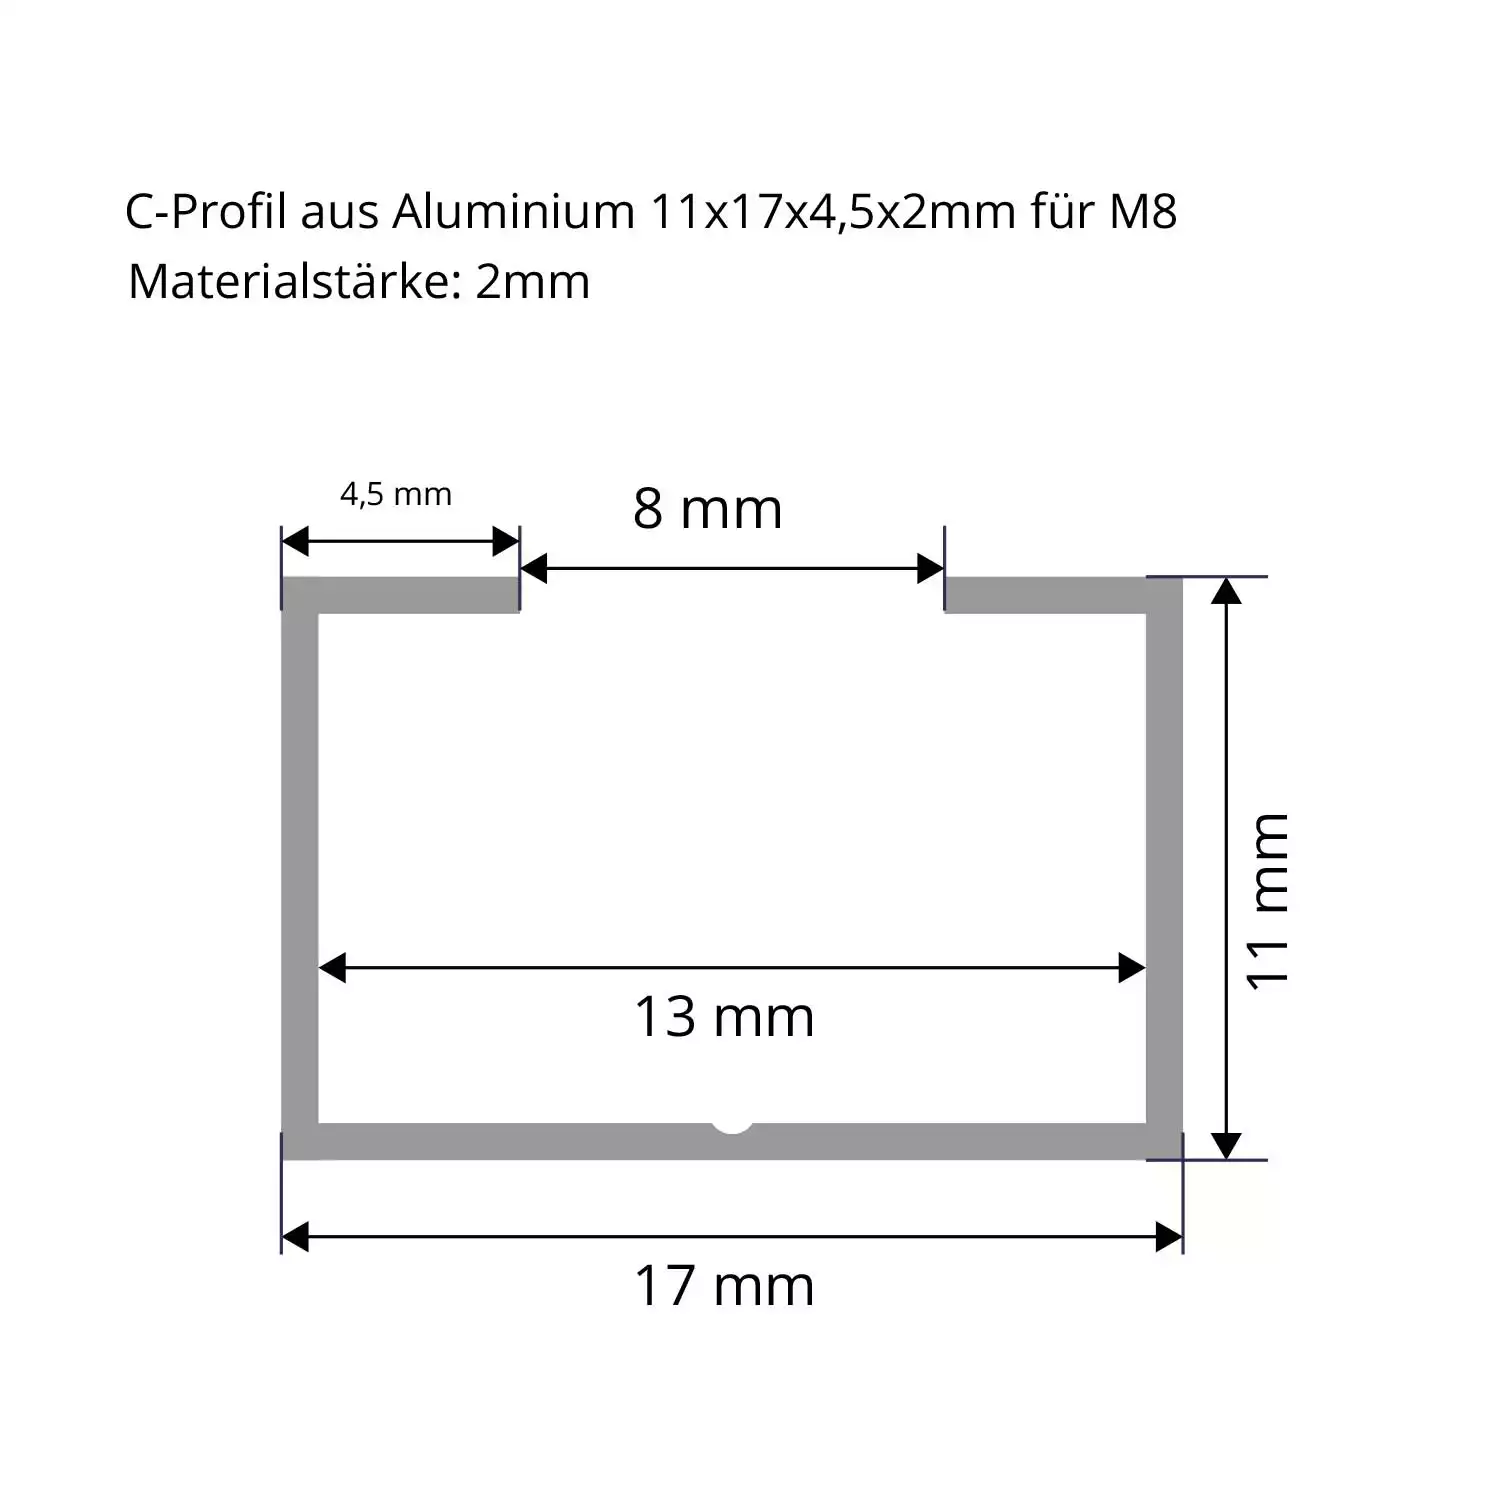 C-Profil aus Aluminium 11x17x4 mm in 2mm Datenblatt